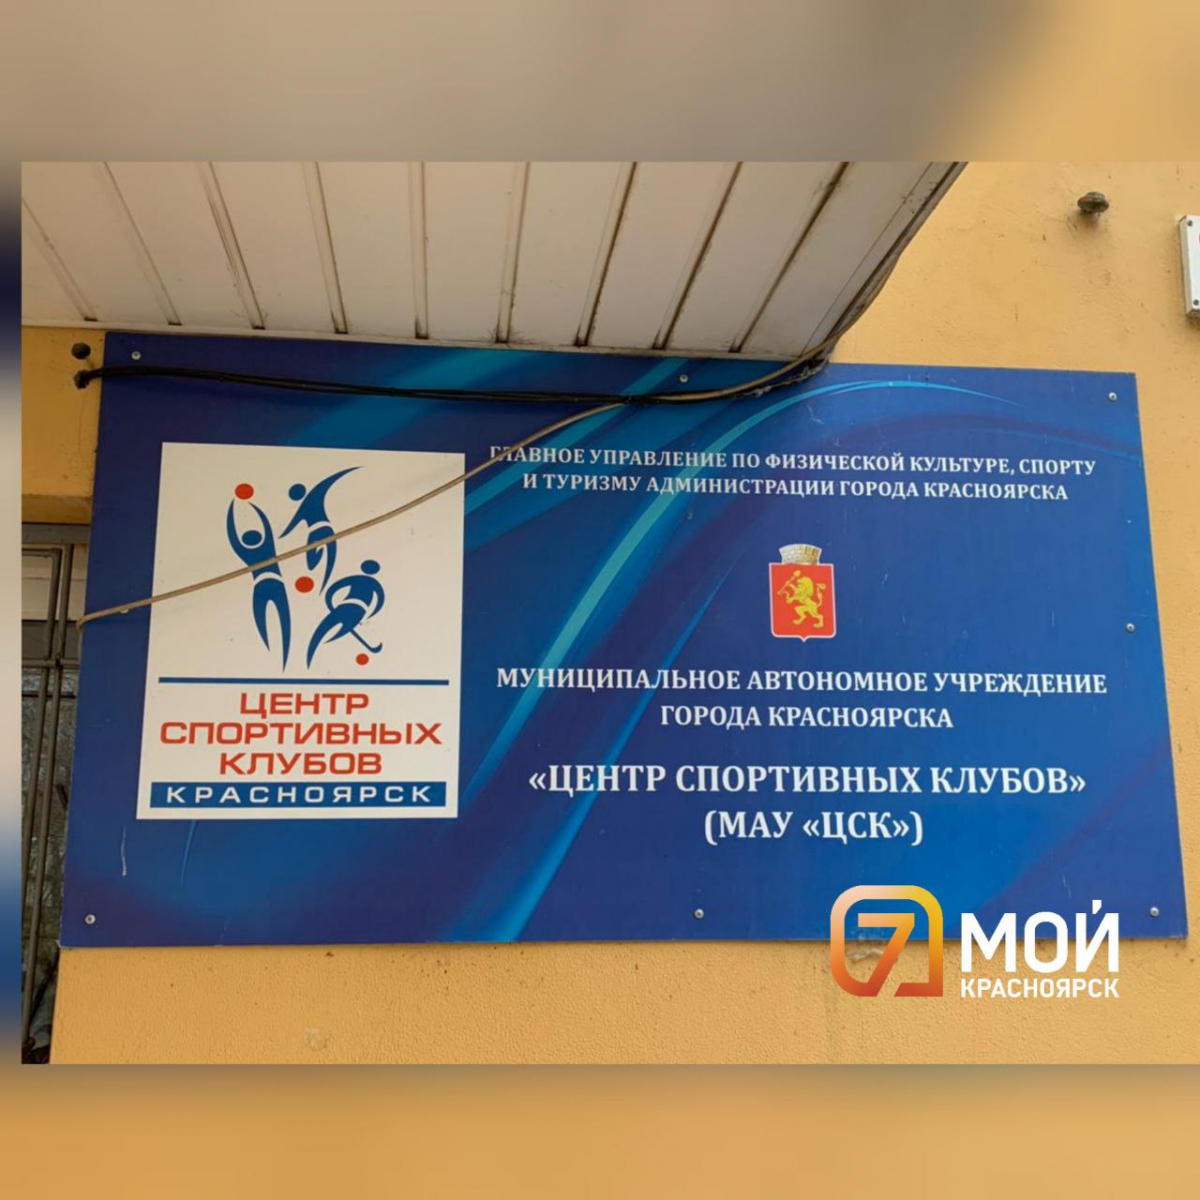 В Красноярске на руководителя «Центра Спортивных клубов» завели 4 дела о хищении 19 млн рублей